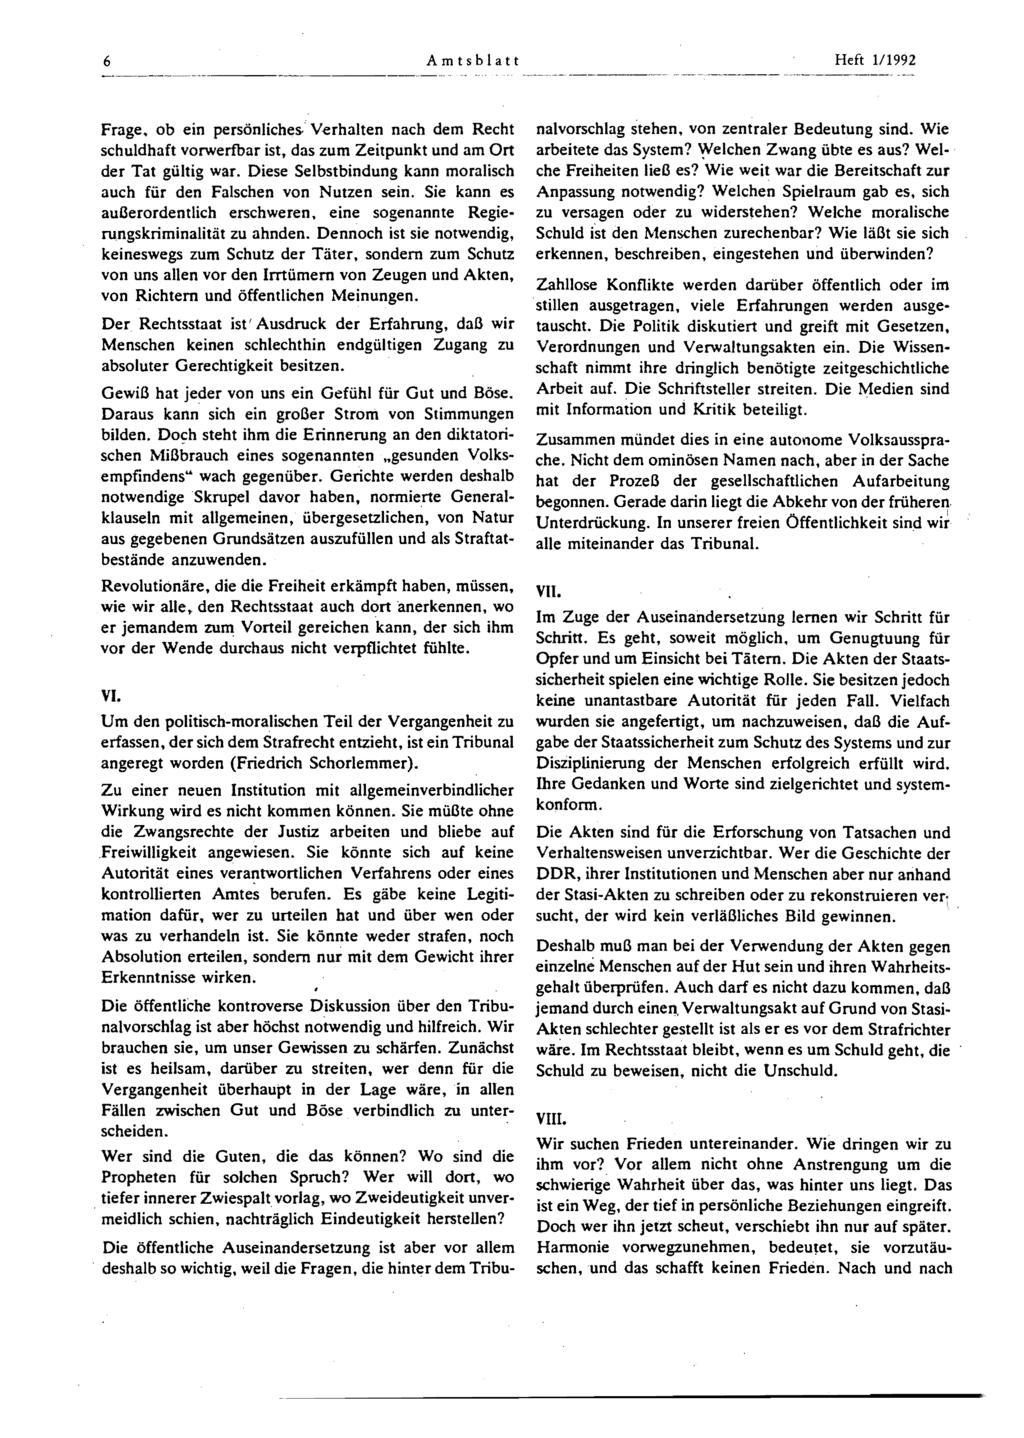 6 Amtsblatt Heft 1/1992 Frage. ob ein persönliches. Verhalten nach dem Recht schuldhaft vorwerfbar ist, das zum Zeitpunkt und am Ort der Tat gültig war.